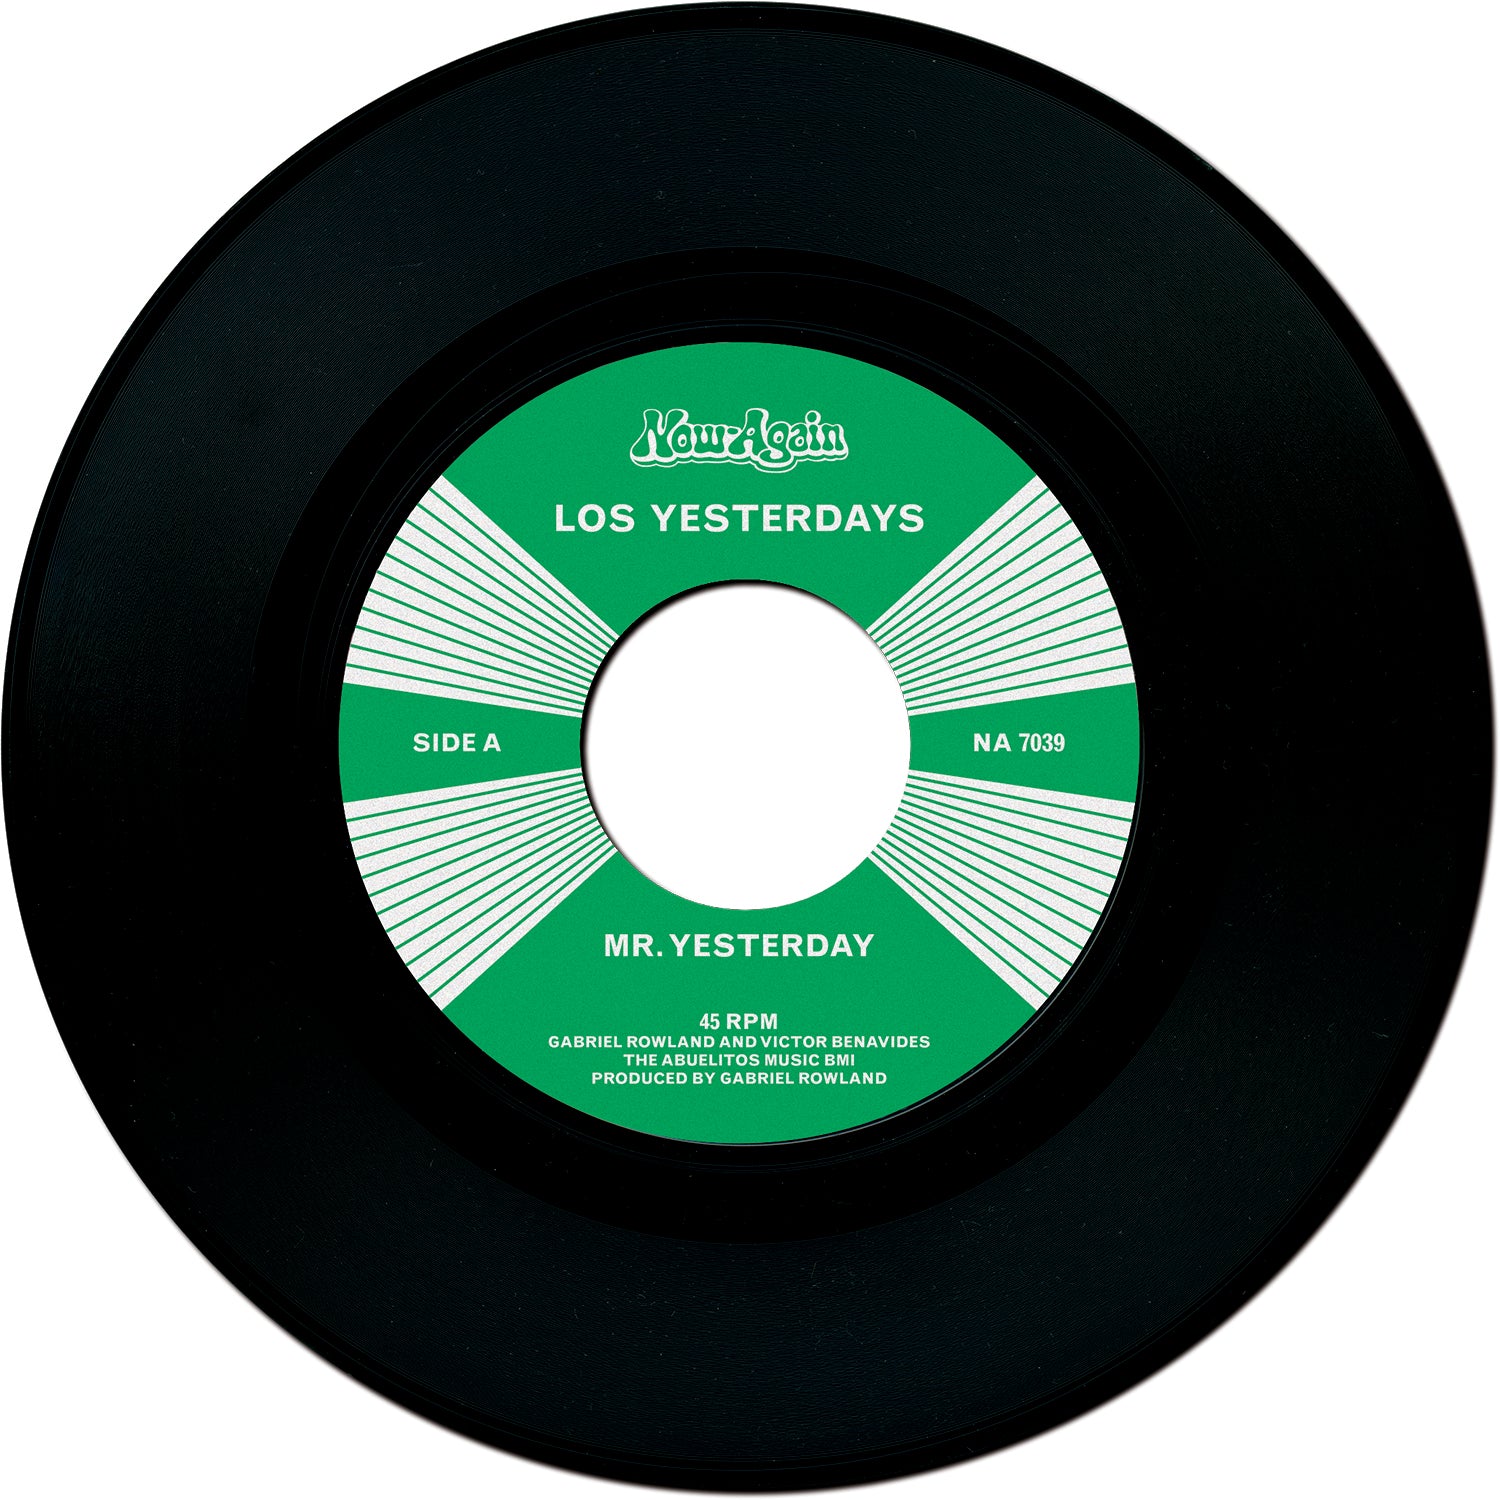 LOS YESTERDAYS - MR. YESTERDAY Vinyl 7"